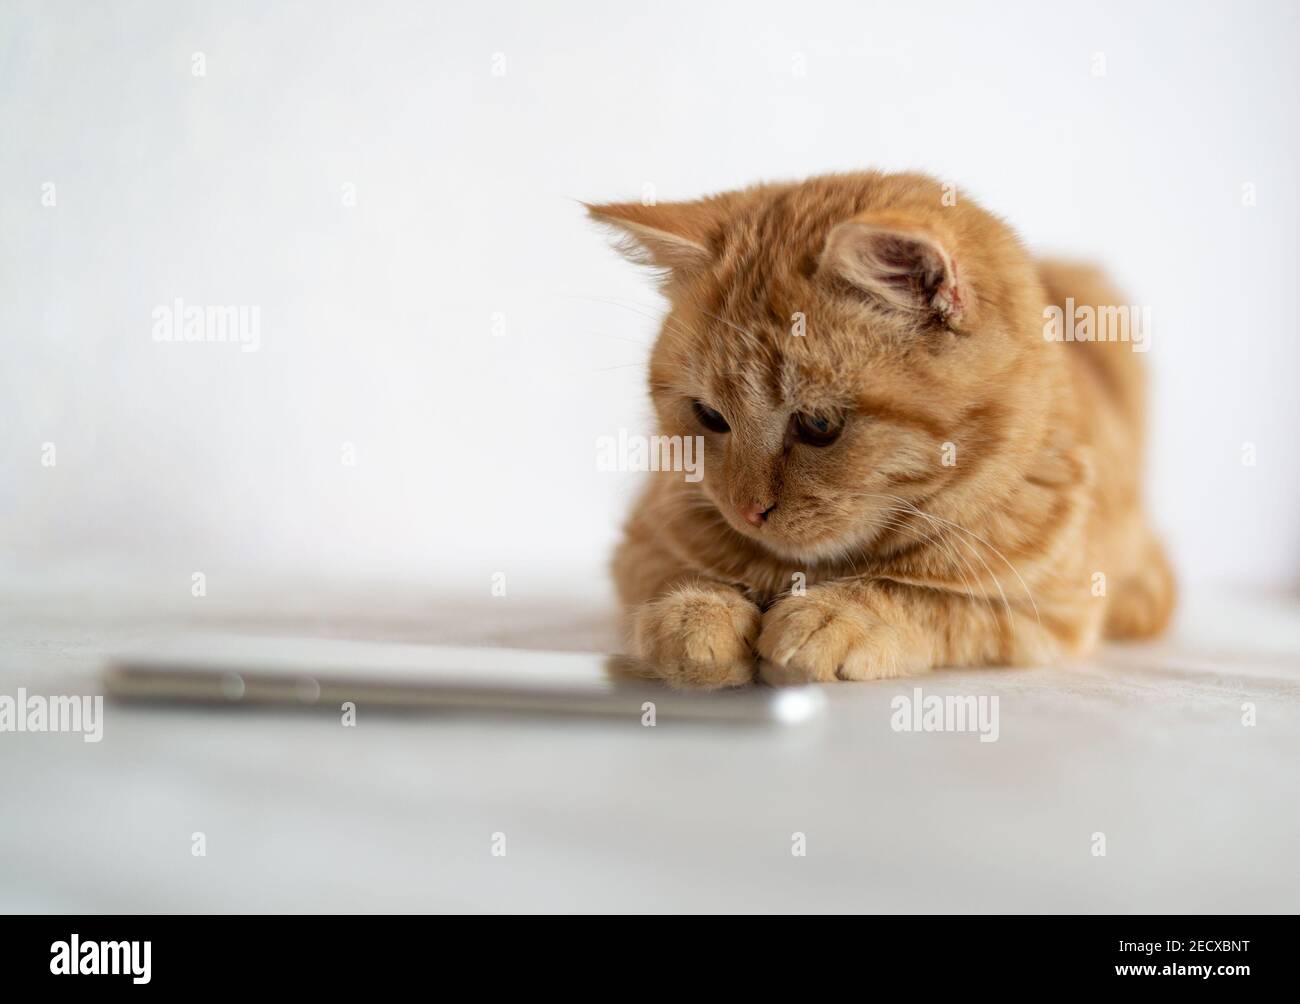 Un chaton au gingembre se trouve à côté d'un téléphone portable Banque D'Images